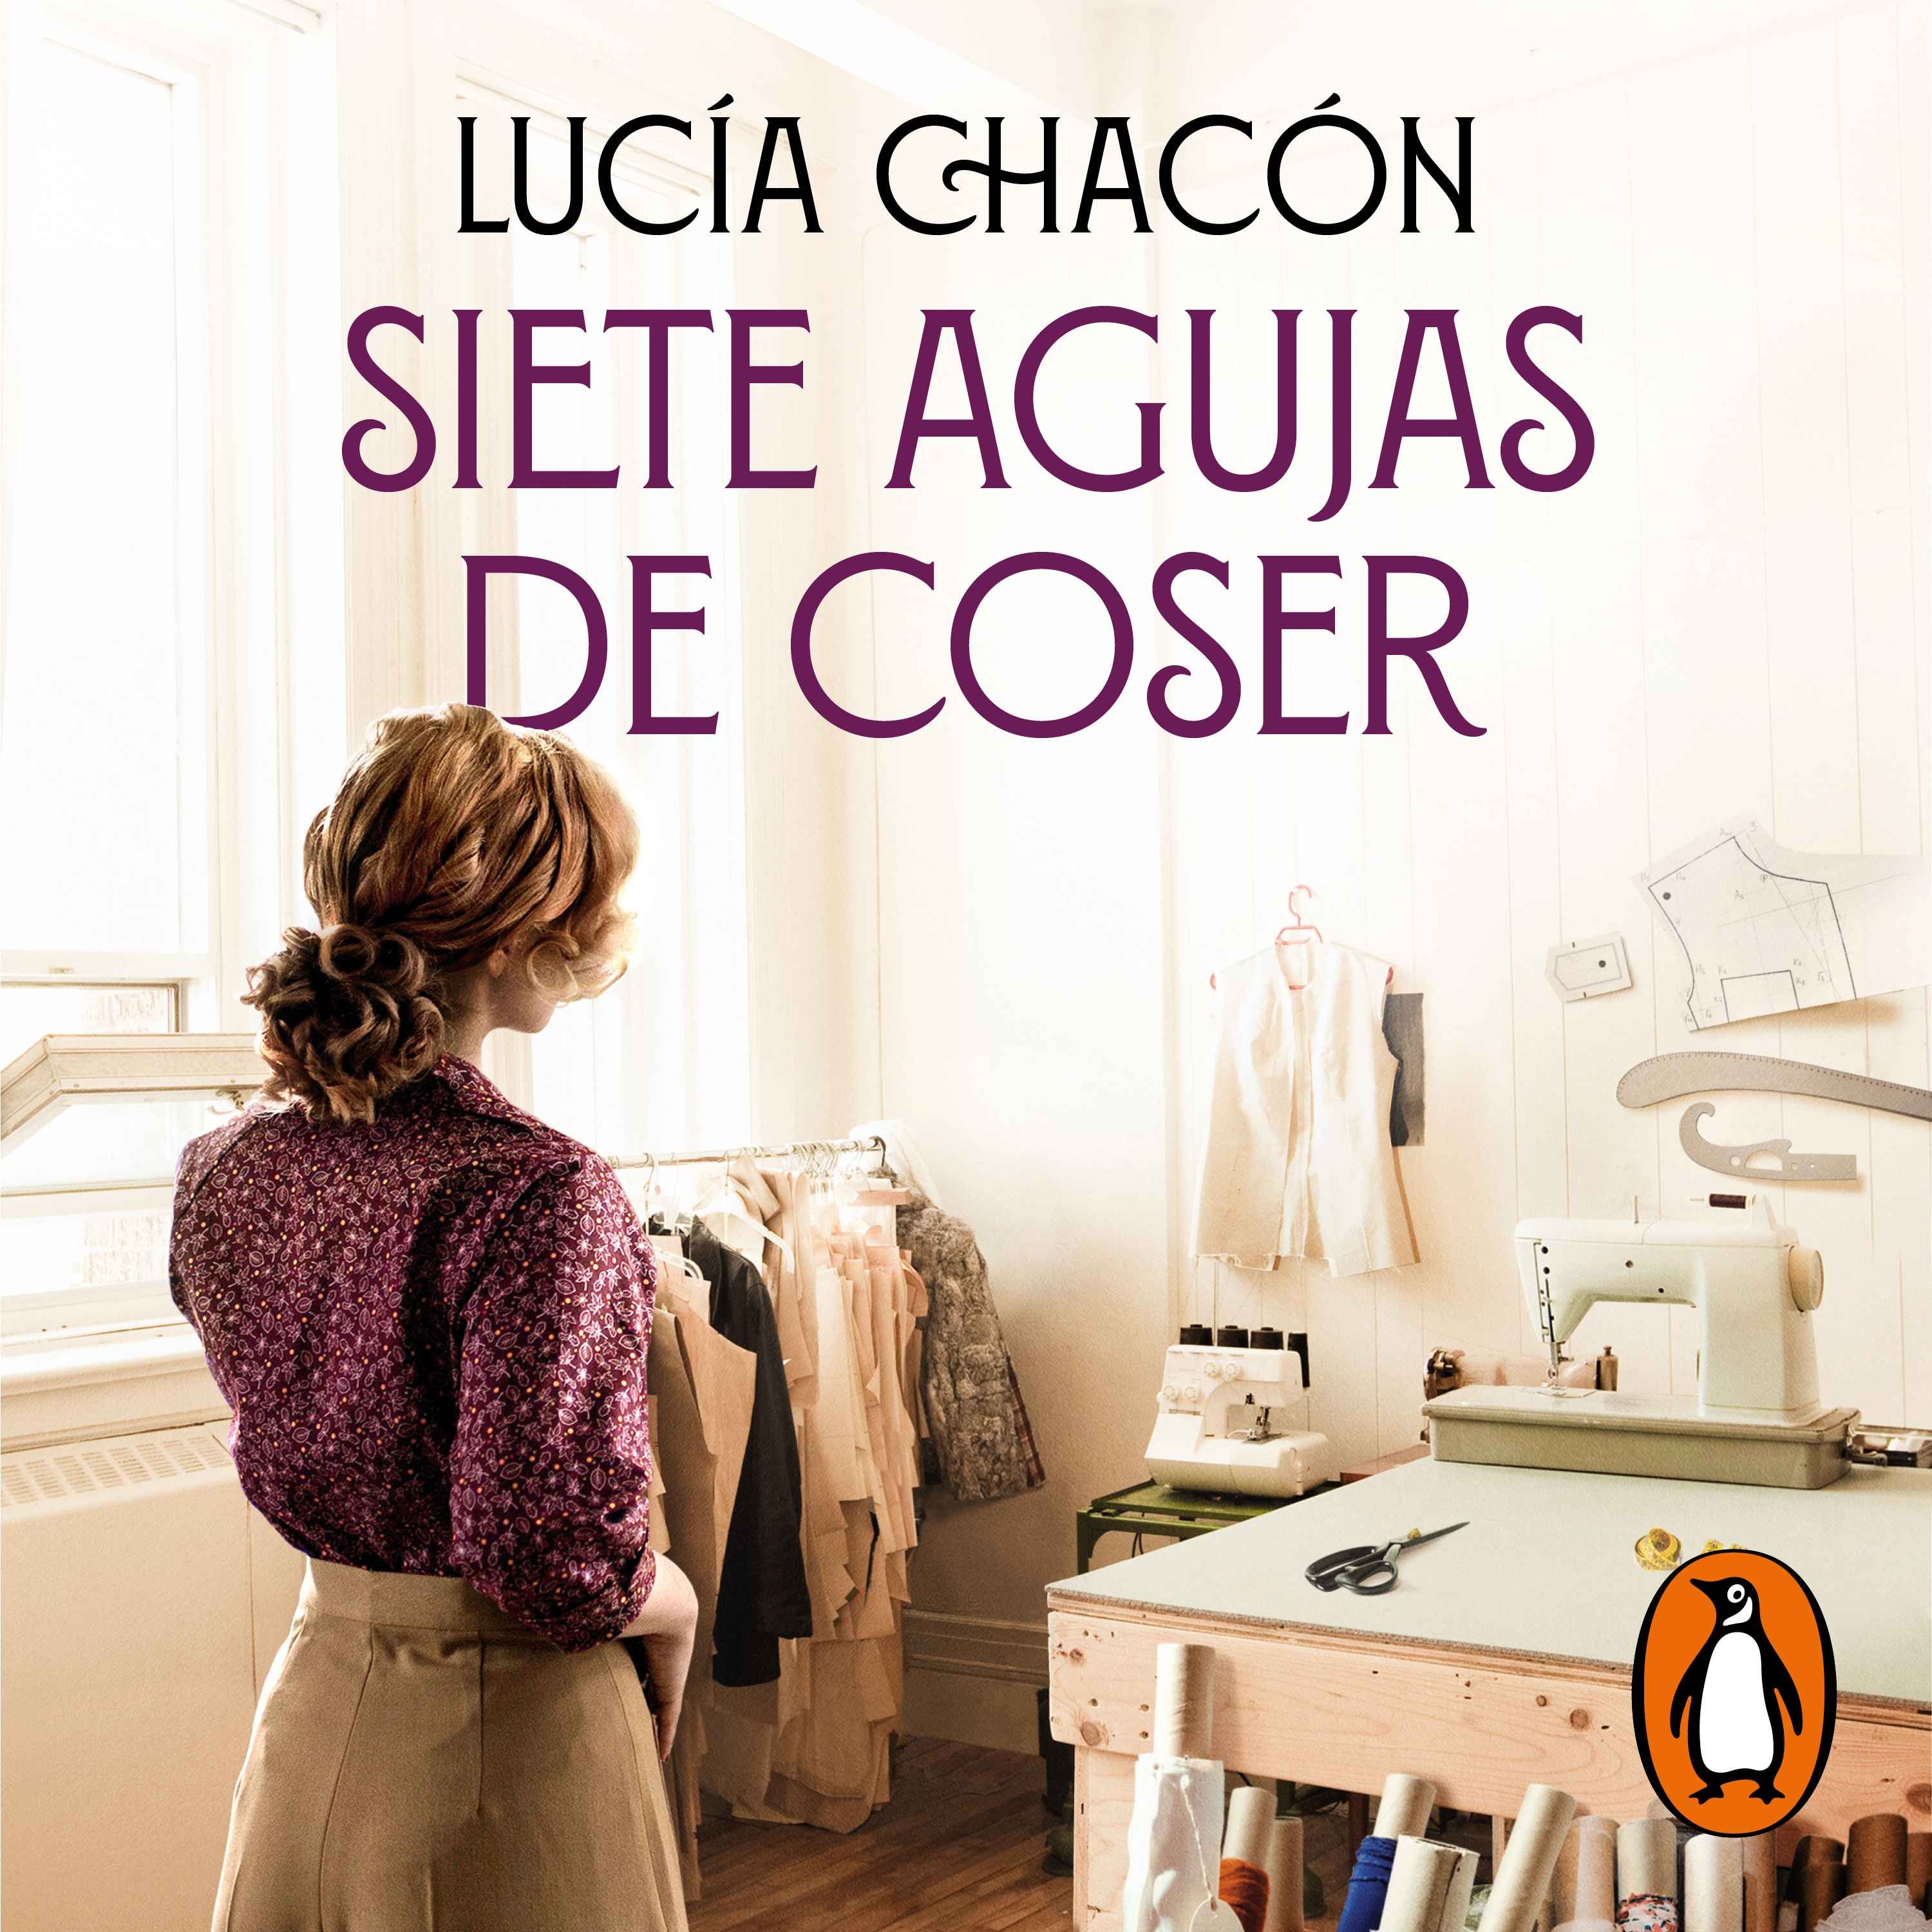 cover art for Audiolibro: "Siete agujas de coser" de Lucía Chacón